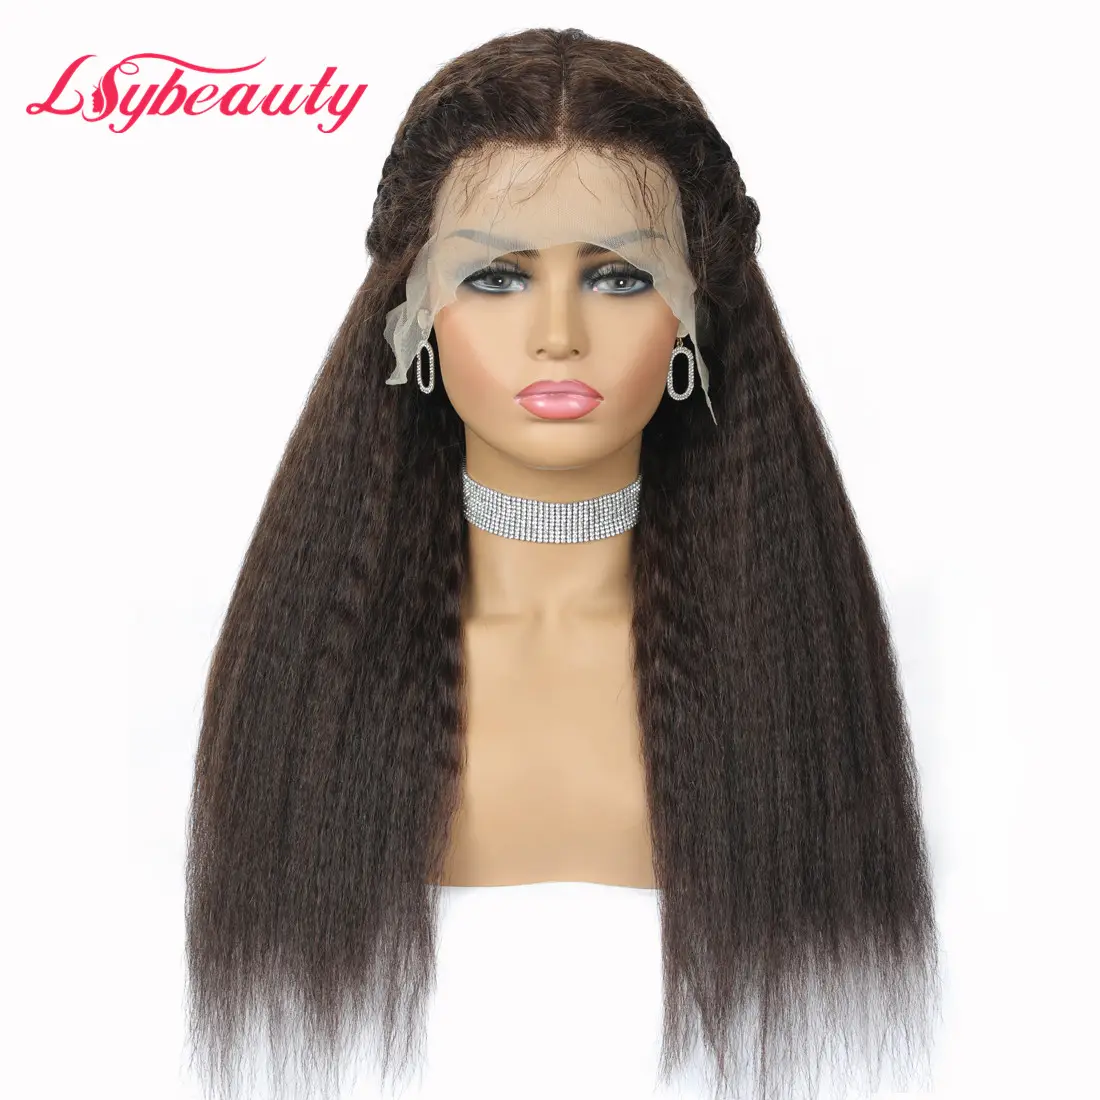 Lsy moğol Kinky düz peruk dantel ön insan saç Cabelos HD şeffaf tam dantel Kinky düz peruk üniteleri için satış